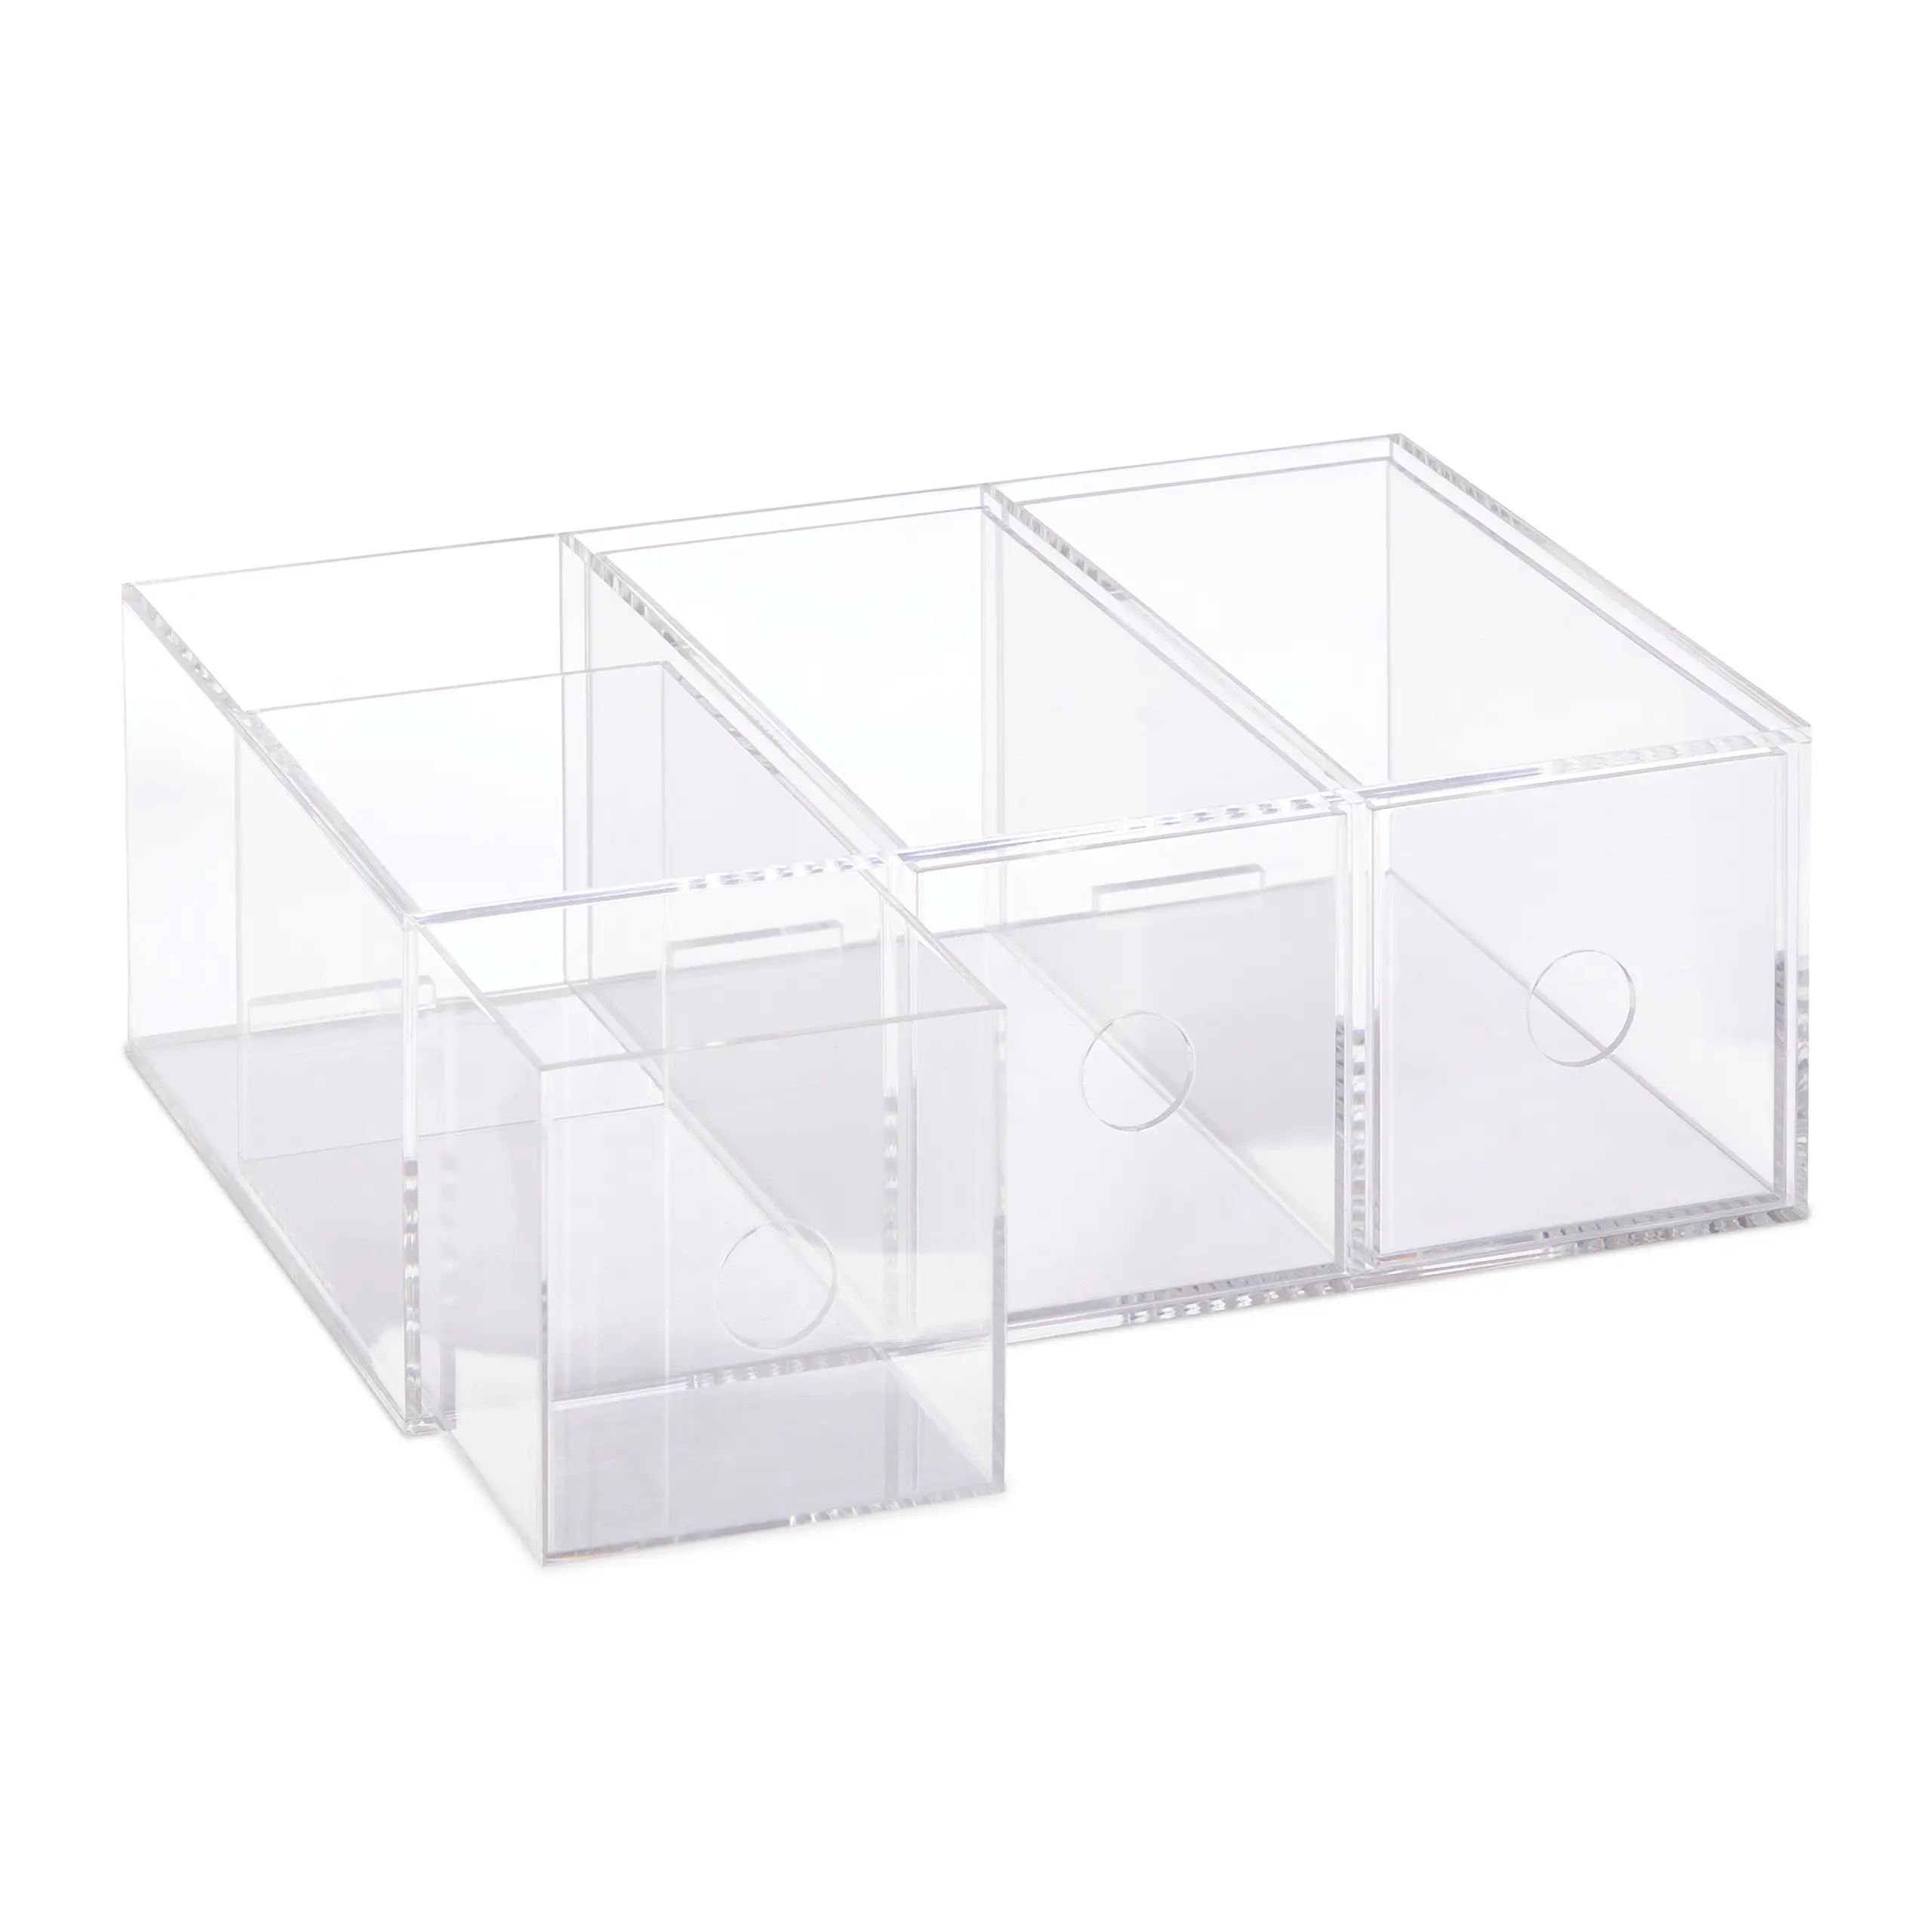 [Vertrauen zuerst, Qualität zuerst] Transparente Teebox mit 3 Schubladen